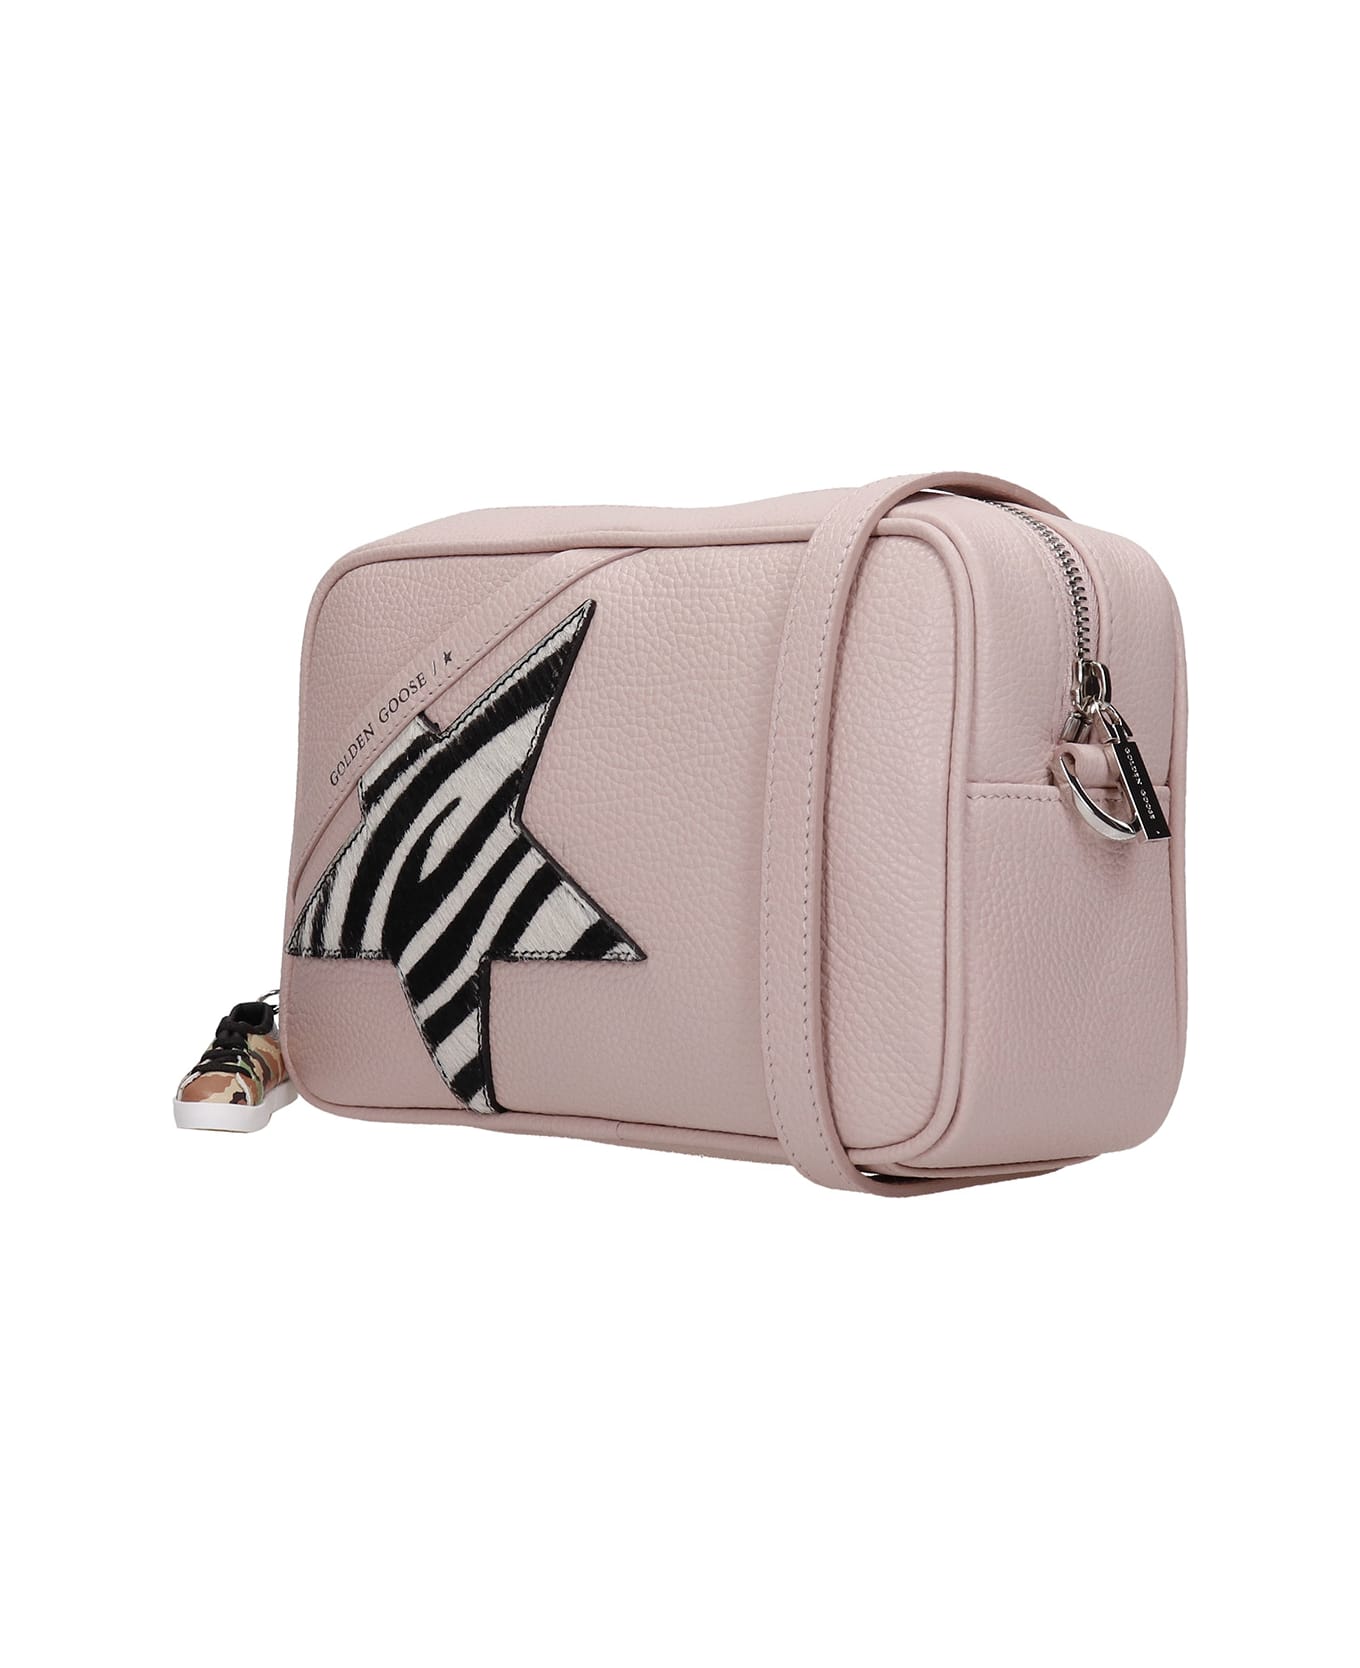 Golden Goose Star Bag Shoulder Bag In Rose-pink Leather - rose-pink